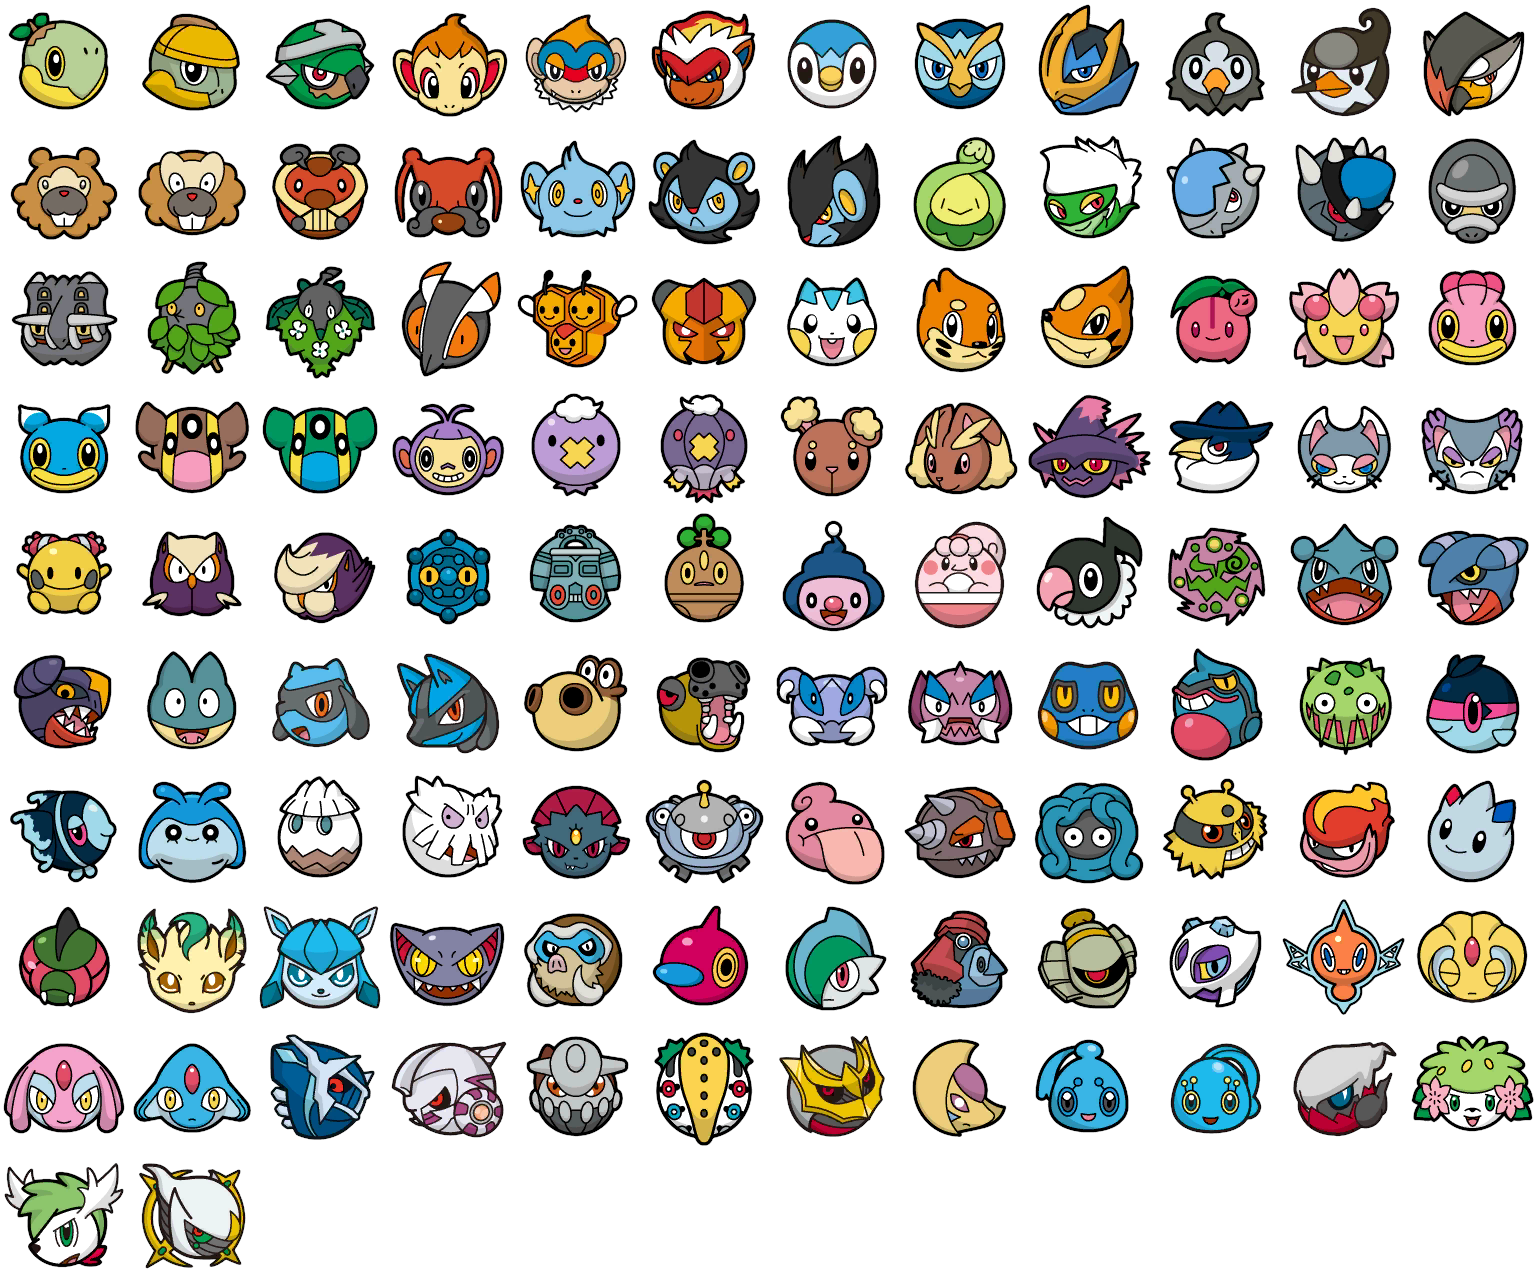 Forhandle Kredsløb Installation 3DS - Pokémon Battle Trozei! / Pokémon Link: Battle! - Pokémon (4th  Generation) - The Spriters Resource